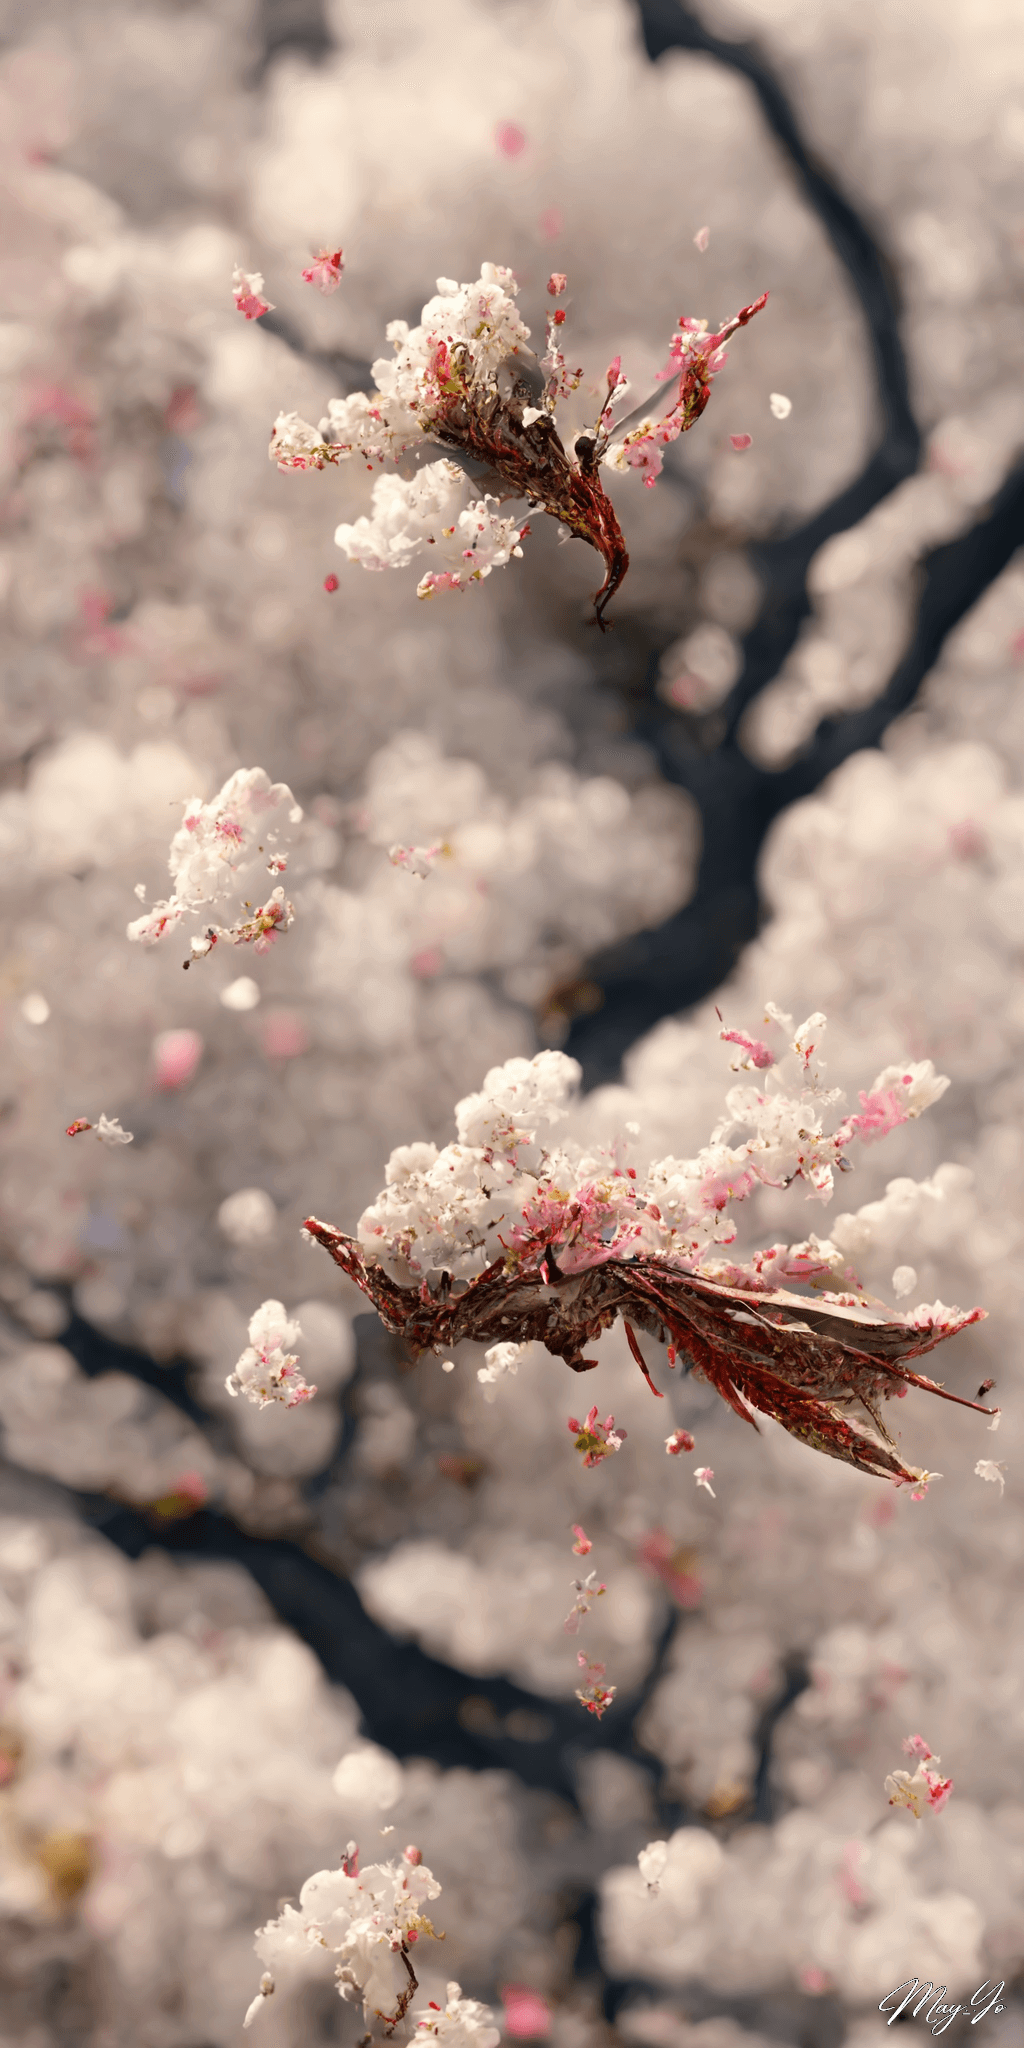 龍の遺伝子を持つ幻の桜の壁紙イラスト 龍と桜をイメージした待受 AIイラスト待受 縦長画像 phoenix dragon cherryblossom illustration fantasy sakura tree blooming